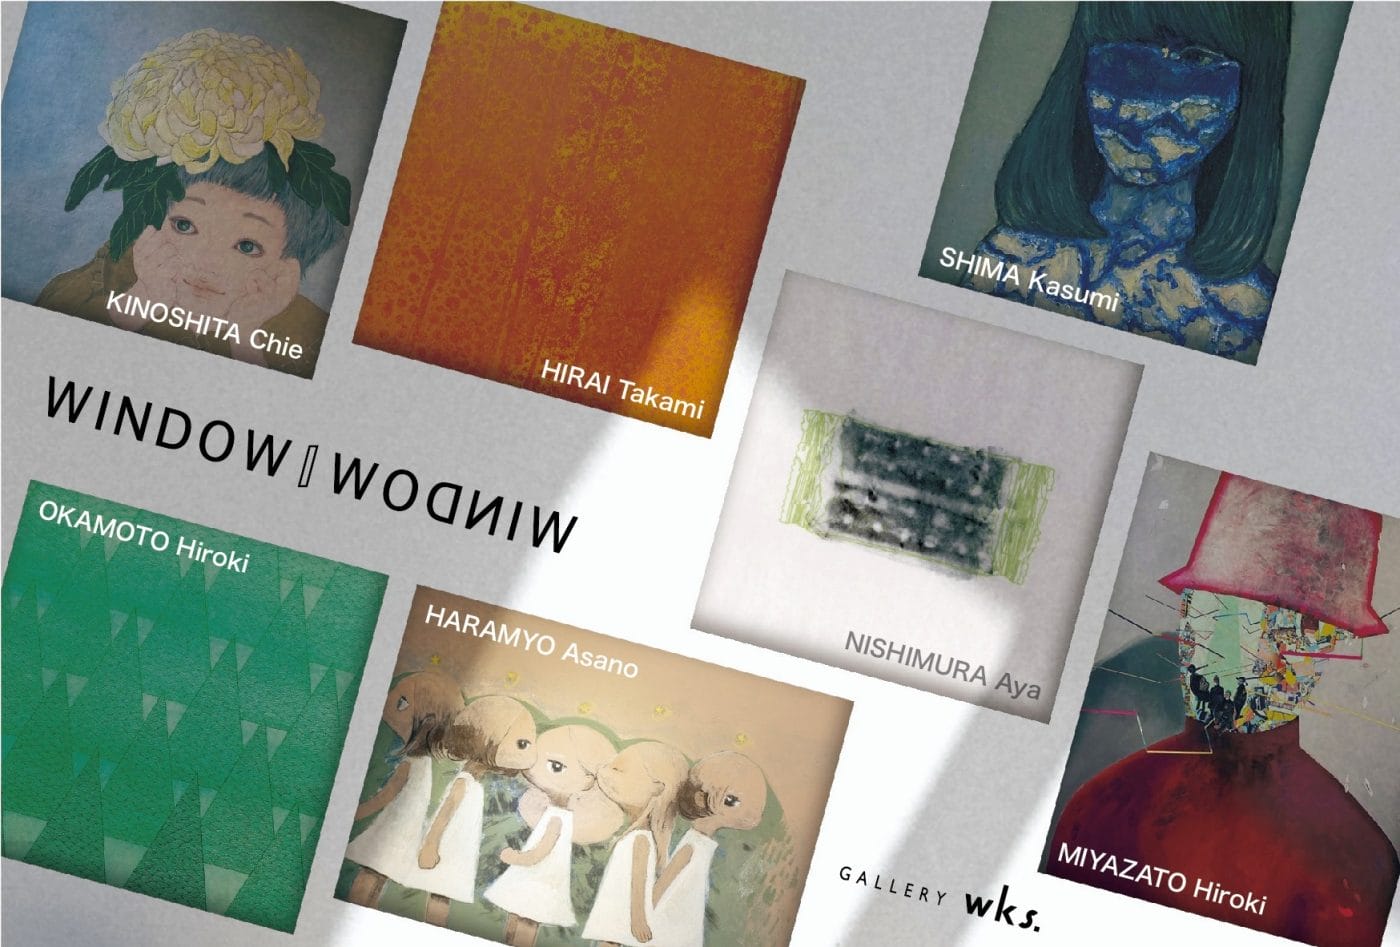 西天満のGALLERY wks.にて、グループ展「WINDOW│WODNIW」開催。大阪芸術大学芸術学部美術学科2012年度卒業生7名が出展。